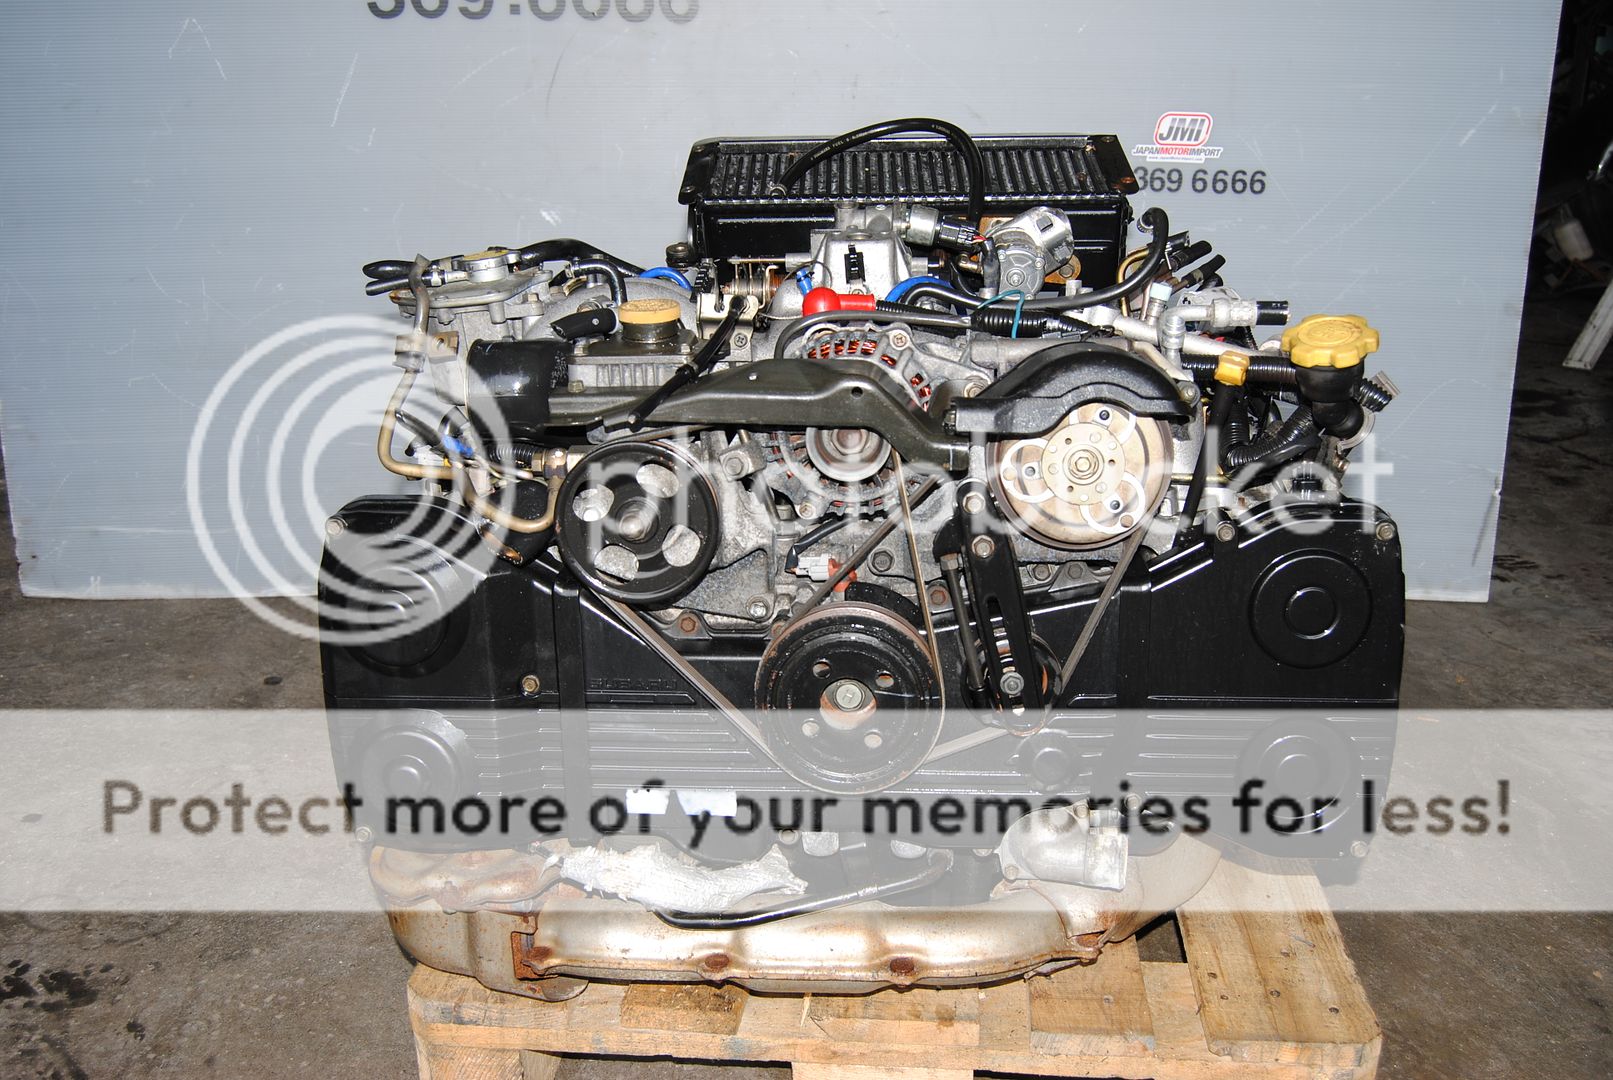 01 02 03 04 JDM Subaru WRX Impreza EJ20 Turbo Engine GDB GC8 Legacy GT